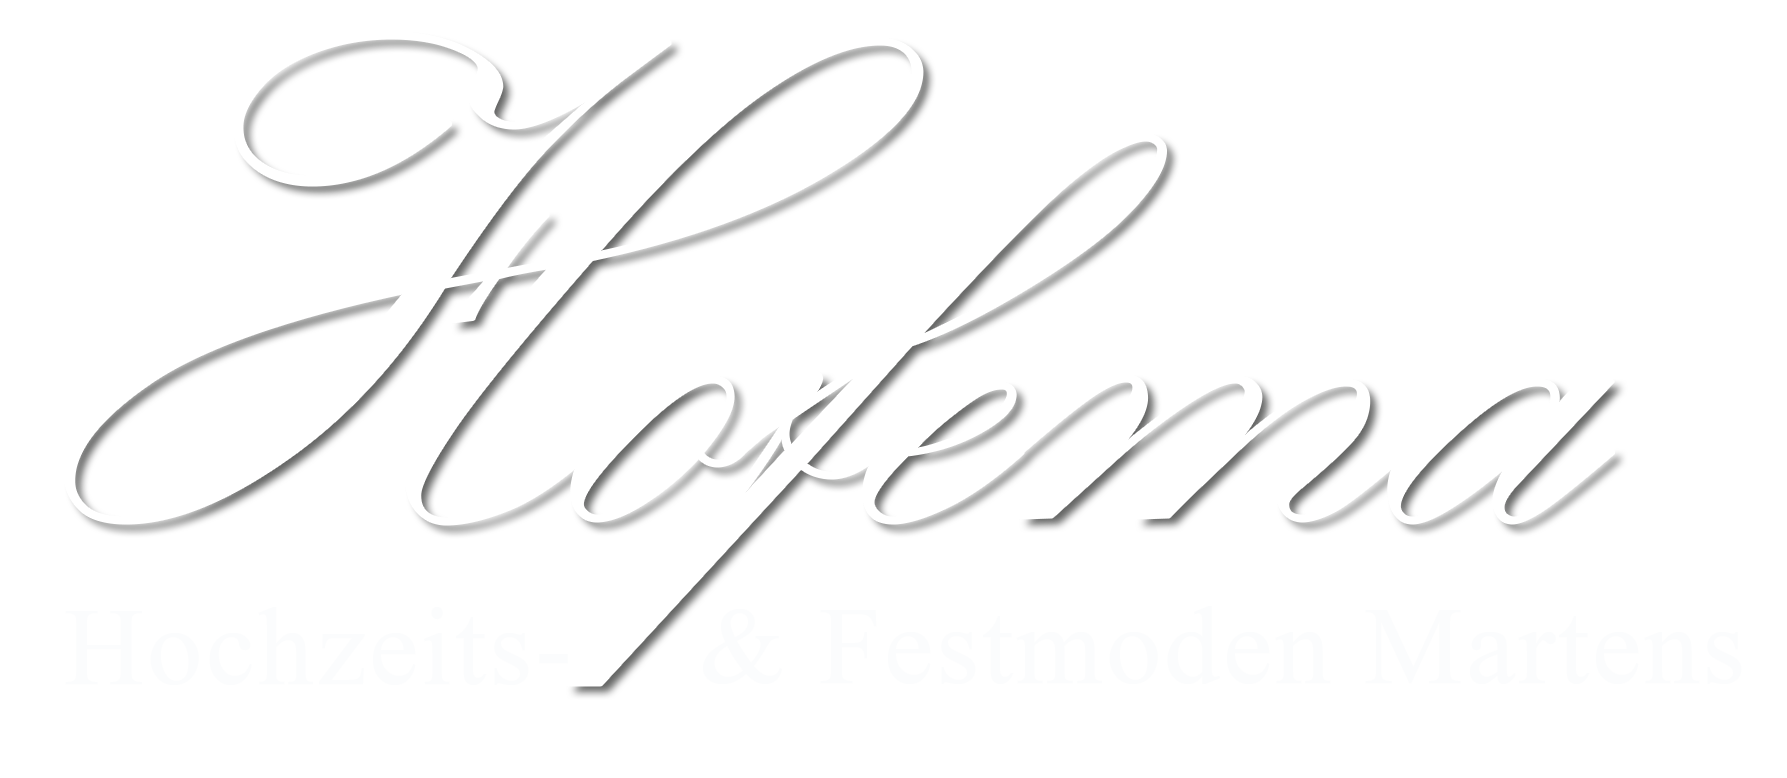 Logo - Hofema Hochzeits- & Festmoden Martens aus Neubrandenburg